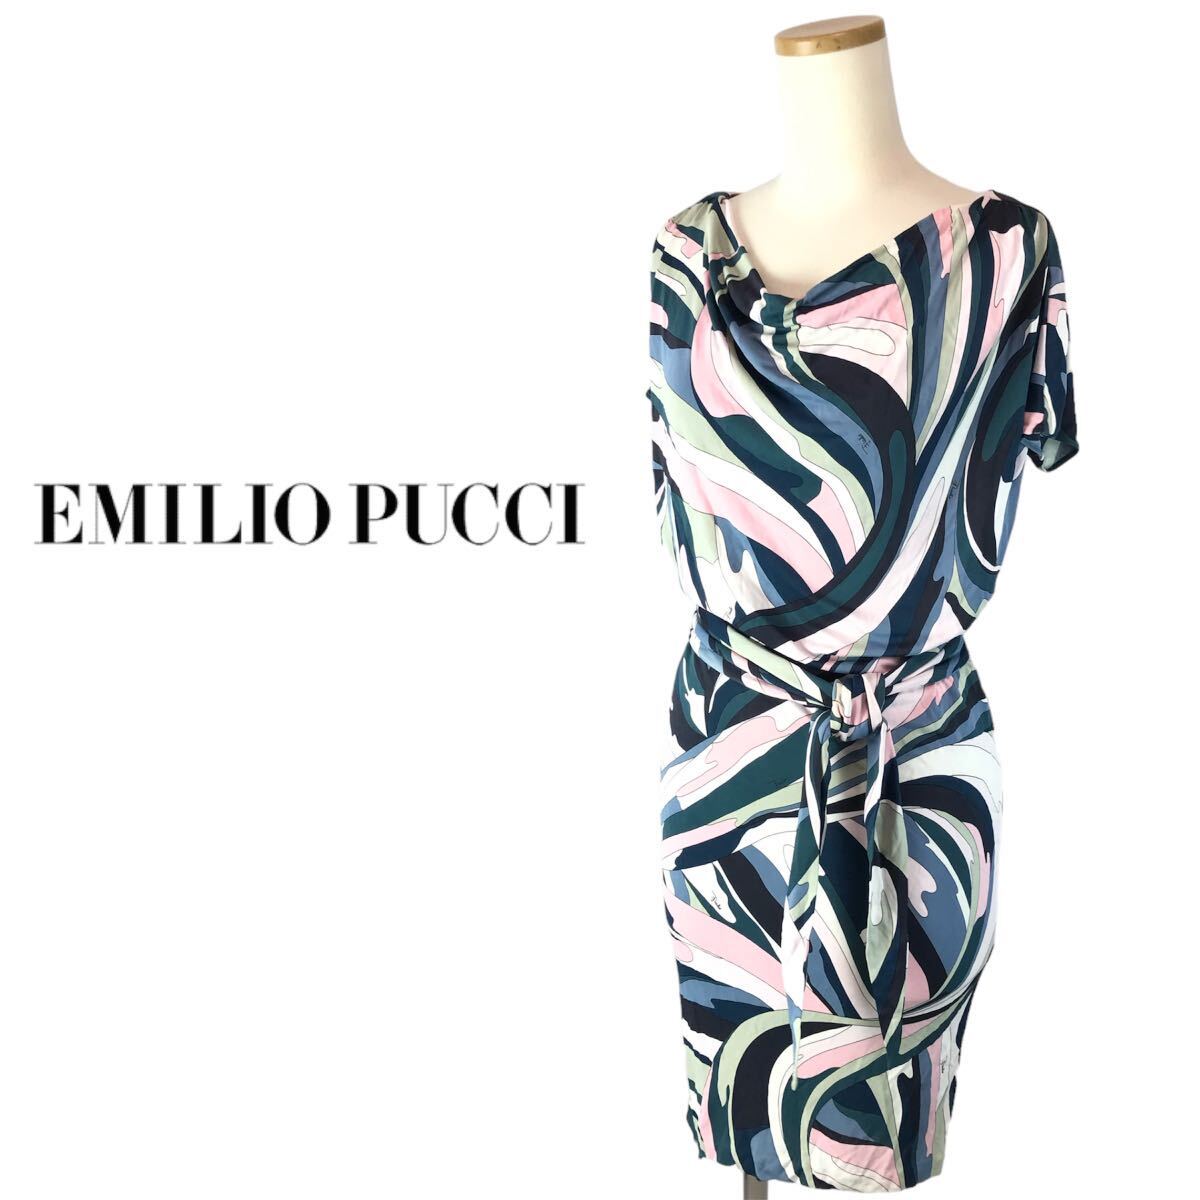 j163 EMILIO PUCCI Emilio Pucci One-piece платье 16RI85 Италия производства 38 тугой искусственный шелк 100% женский стандартный товар 